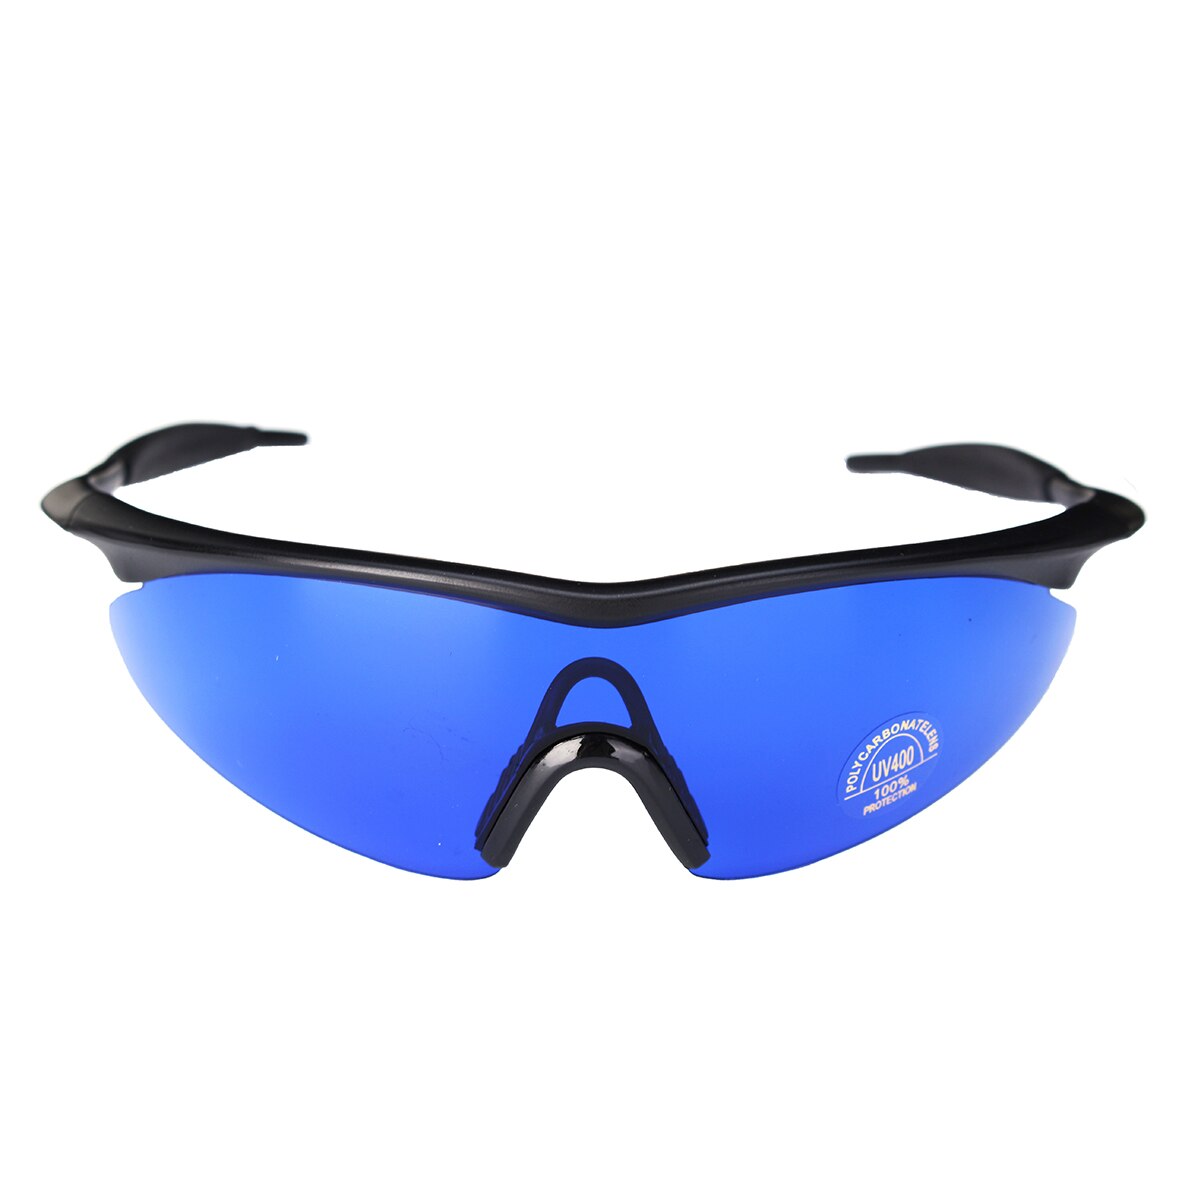 Mænd kvinder retro golfbold finder briller blå linse øjenbeskyttelse sport briller solbriller med boks golf tilbehør